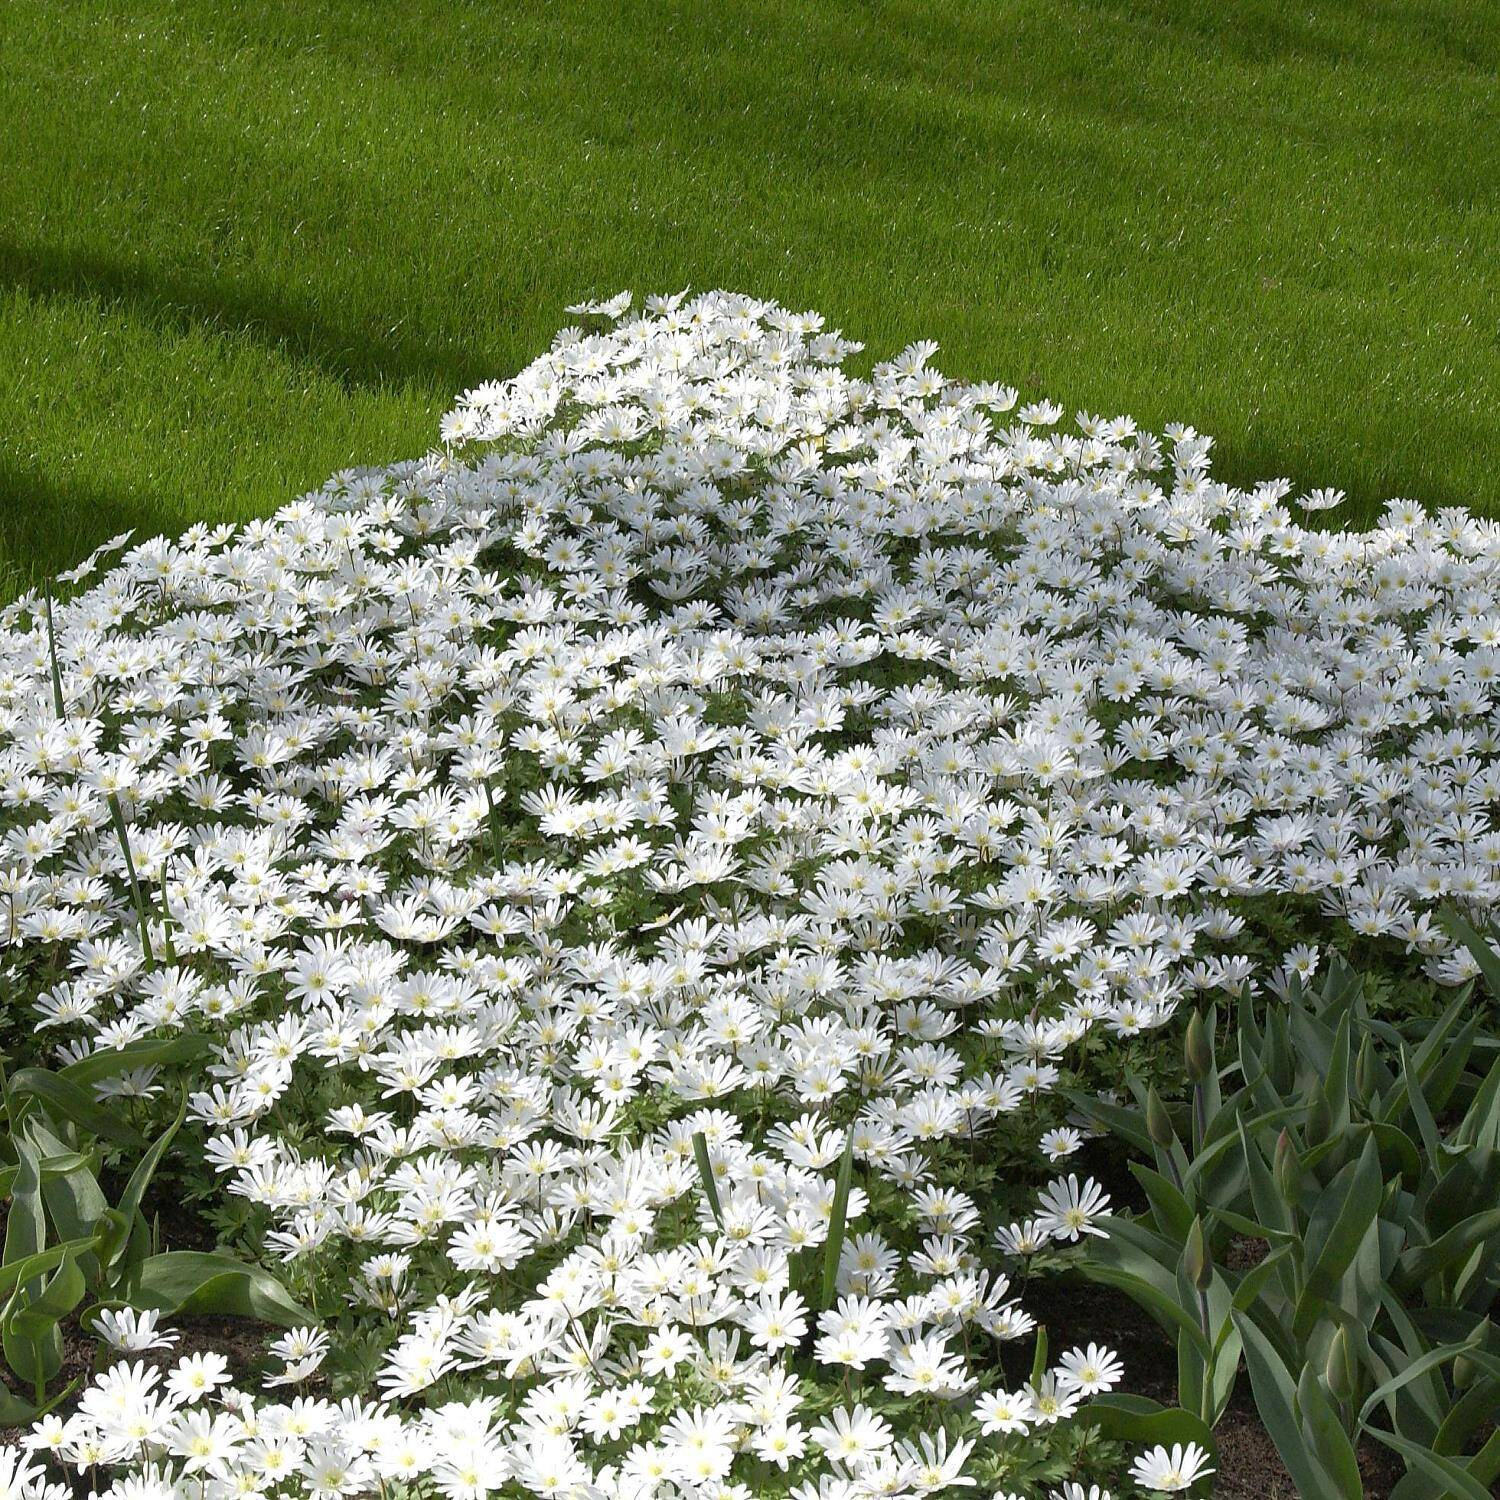 Kategorie <b>Stauden </b> - Frühlings-Anemone 'White Splendour' - Anemone blanda 'White Splendour'